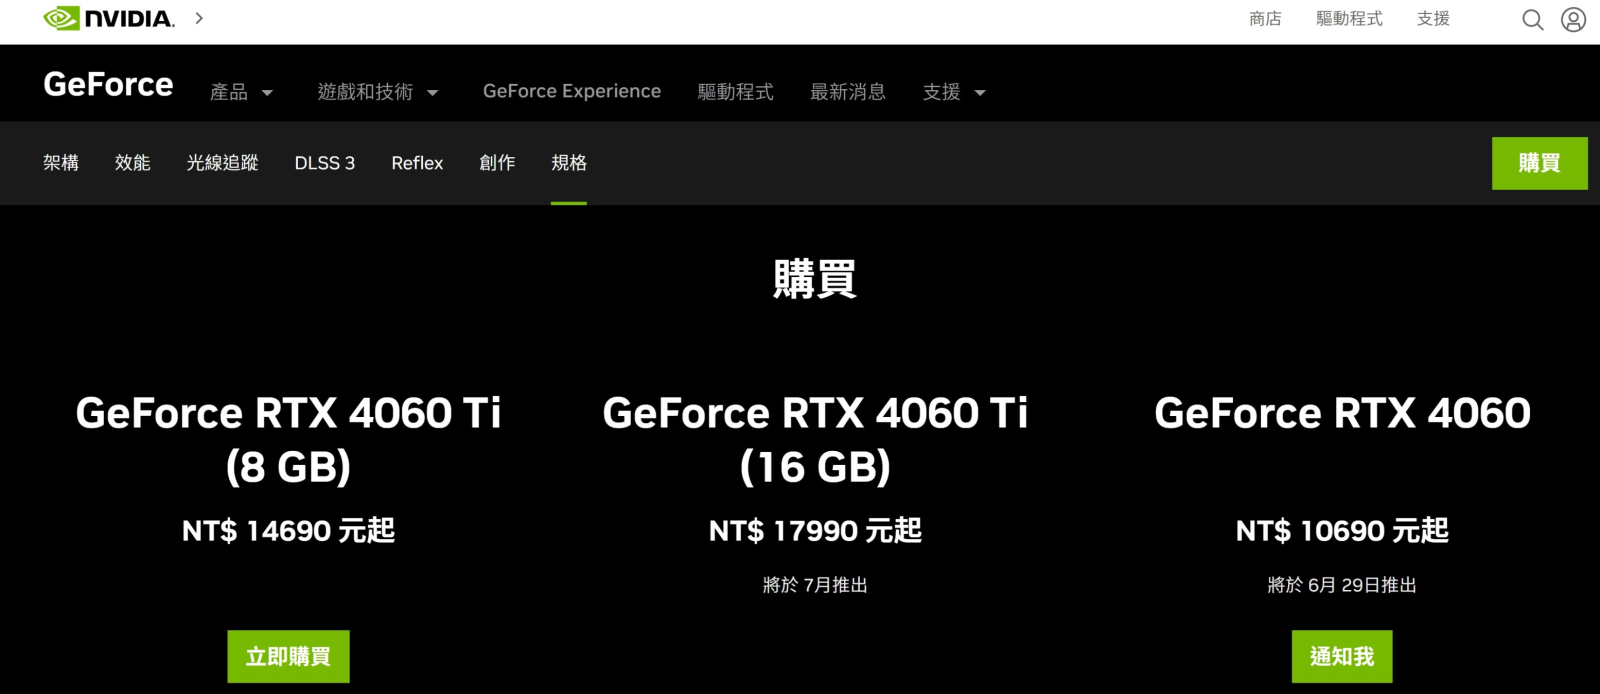 Nvidia Geforce RTX4060官方資訊 - 售價